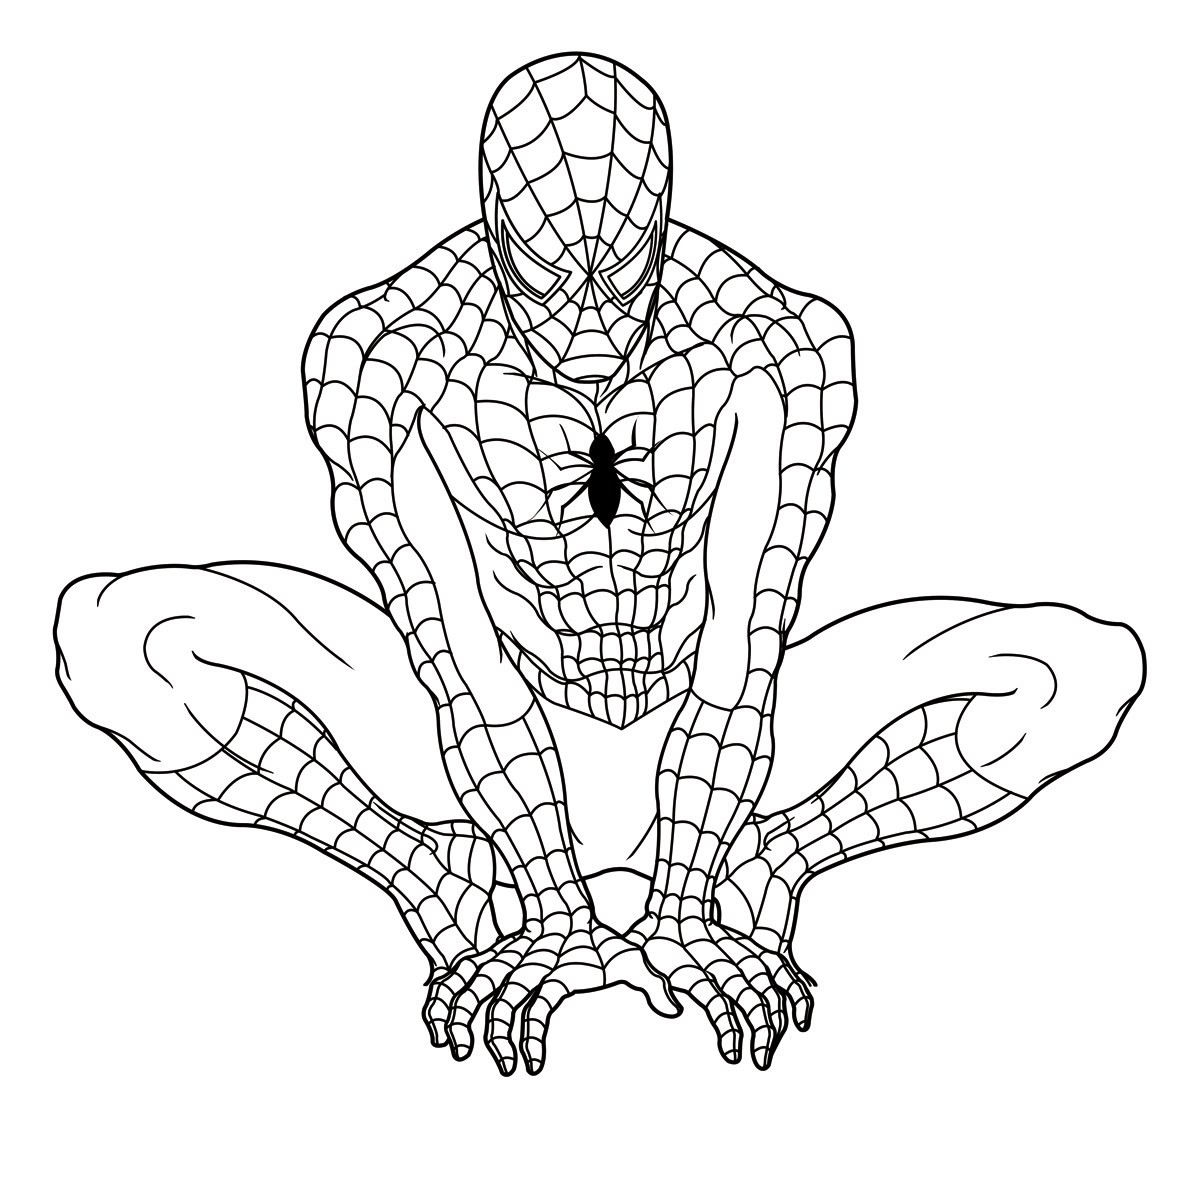 Spiderman Ausmalbilder
 Malvorlagen fur kinder Ausmalbilder Spiderman kostenlos